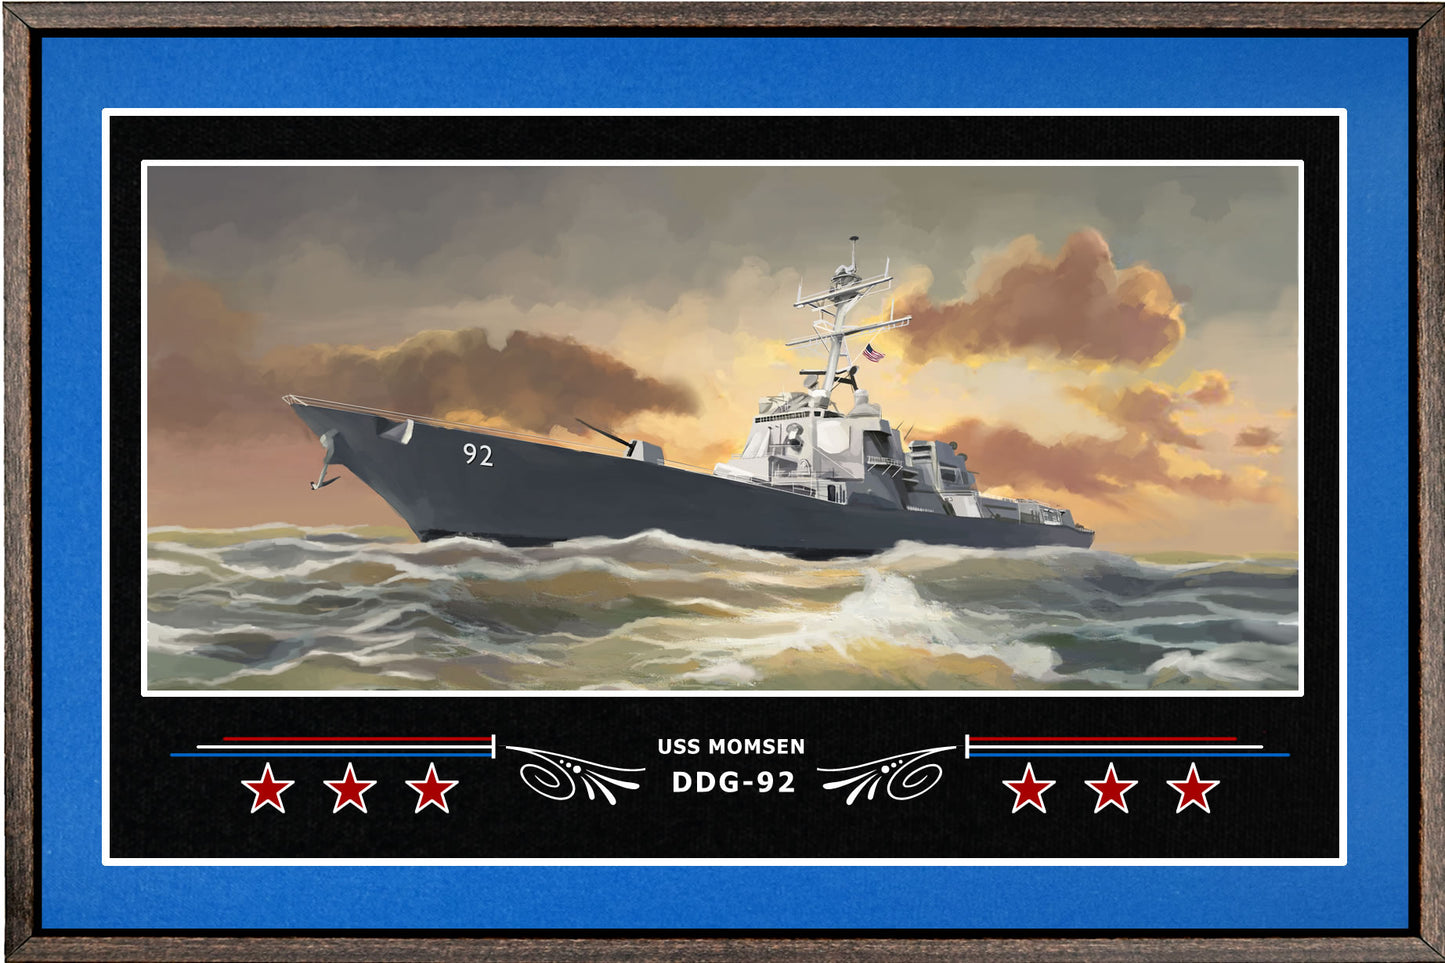 USS MOMSEN DDG 92 BOX FRAMED CANVAS ART BLUE